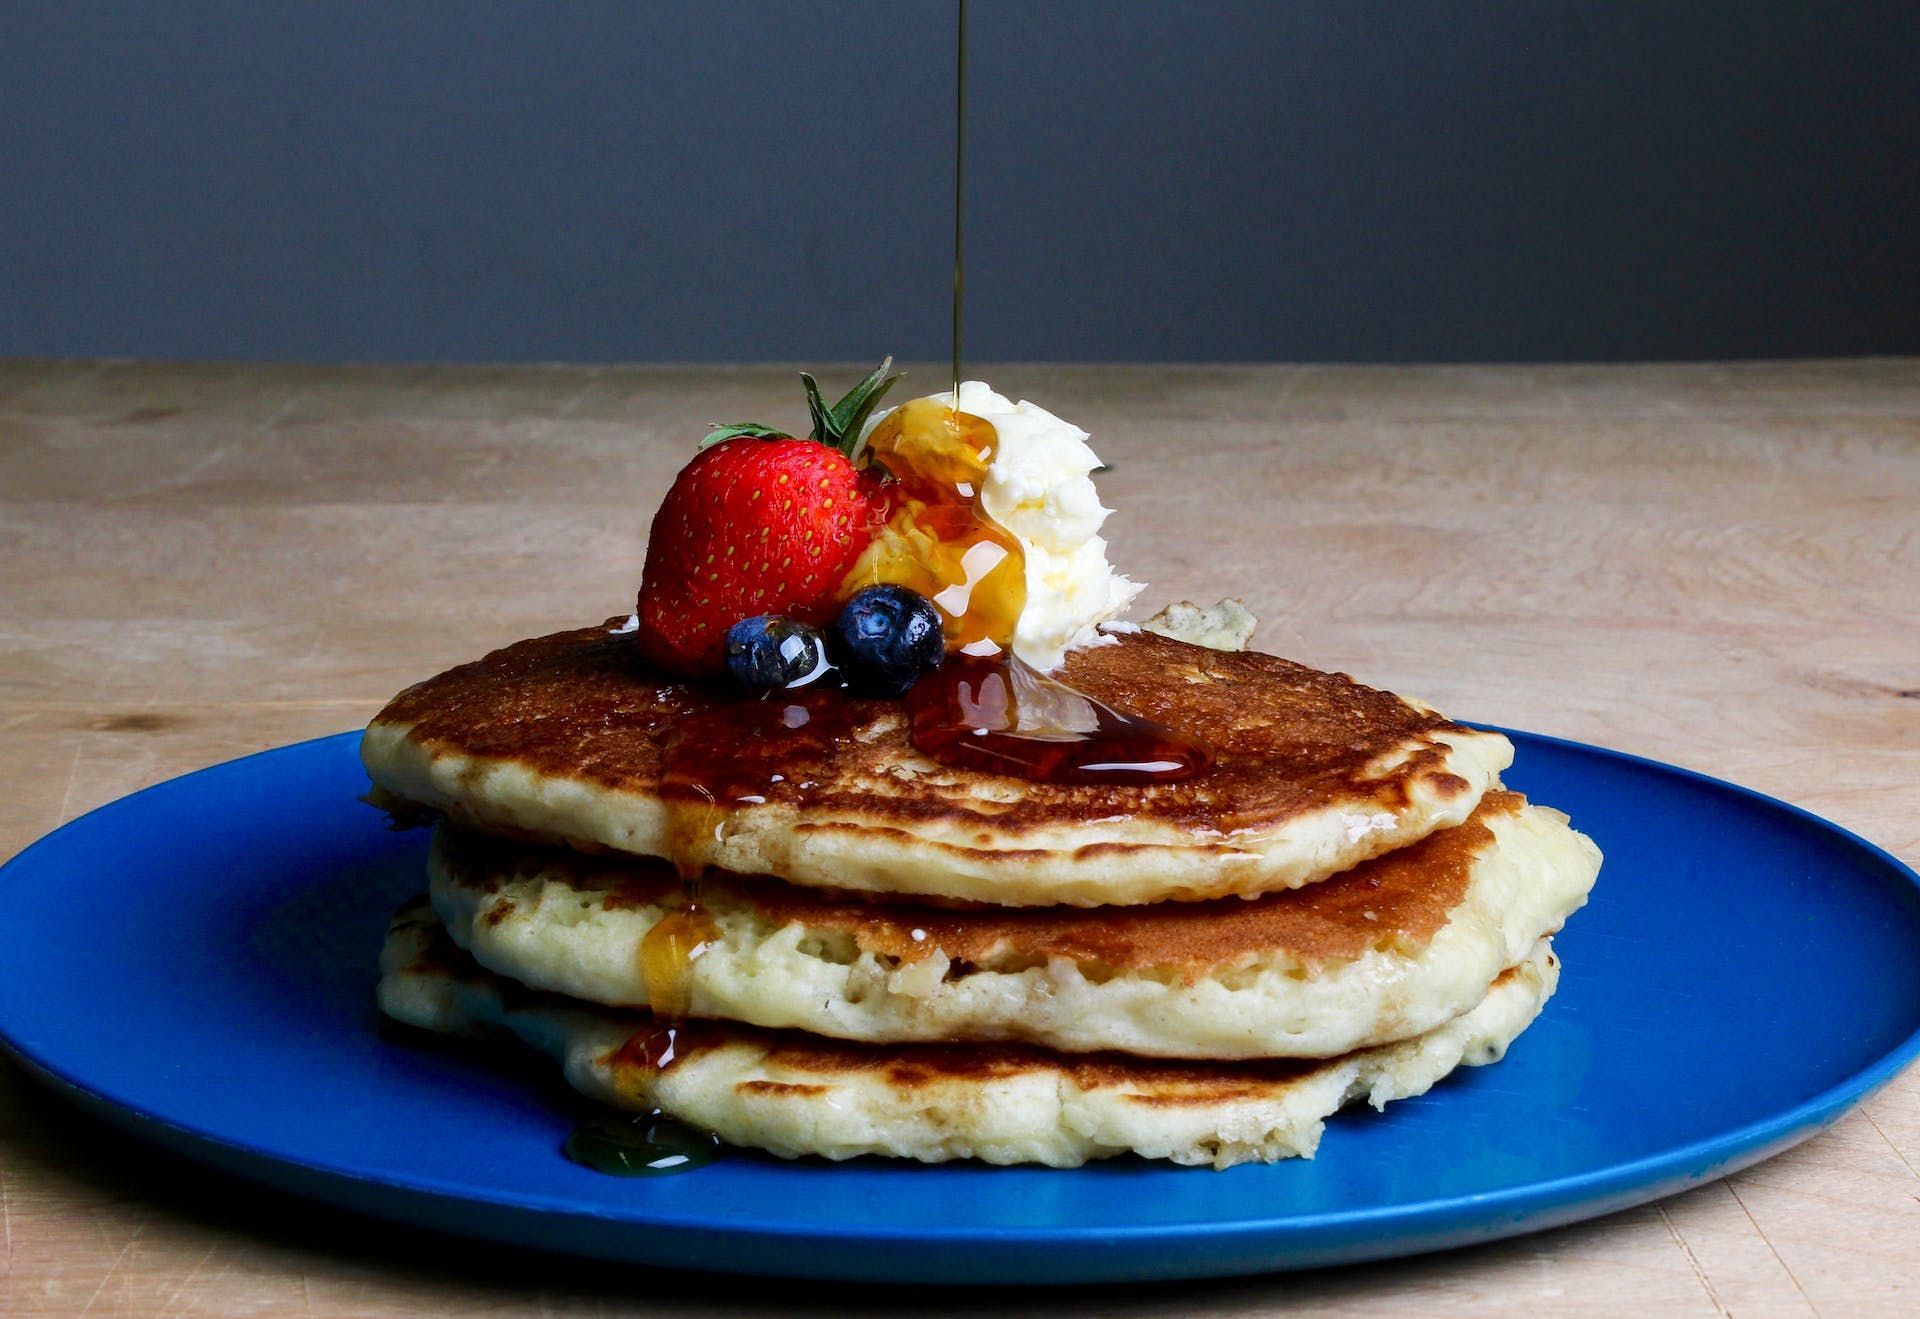 Pancakes are worst breakfast foods. (Image via Pexels/Sydney Troxell)